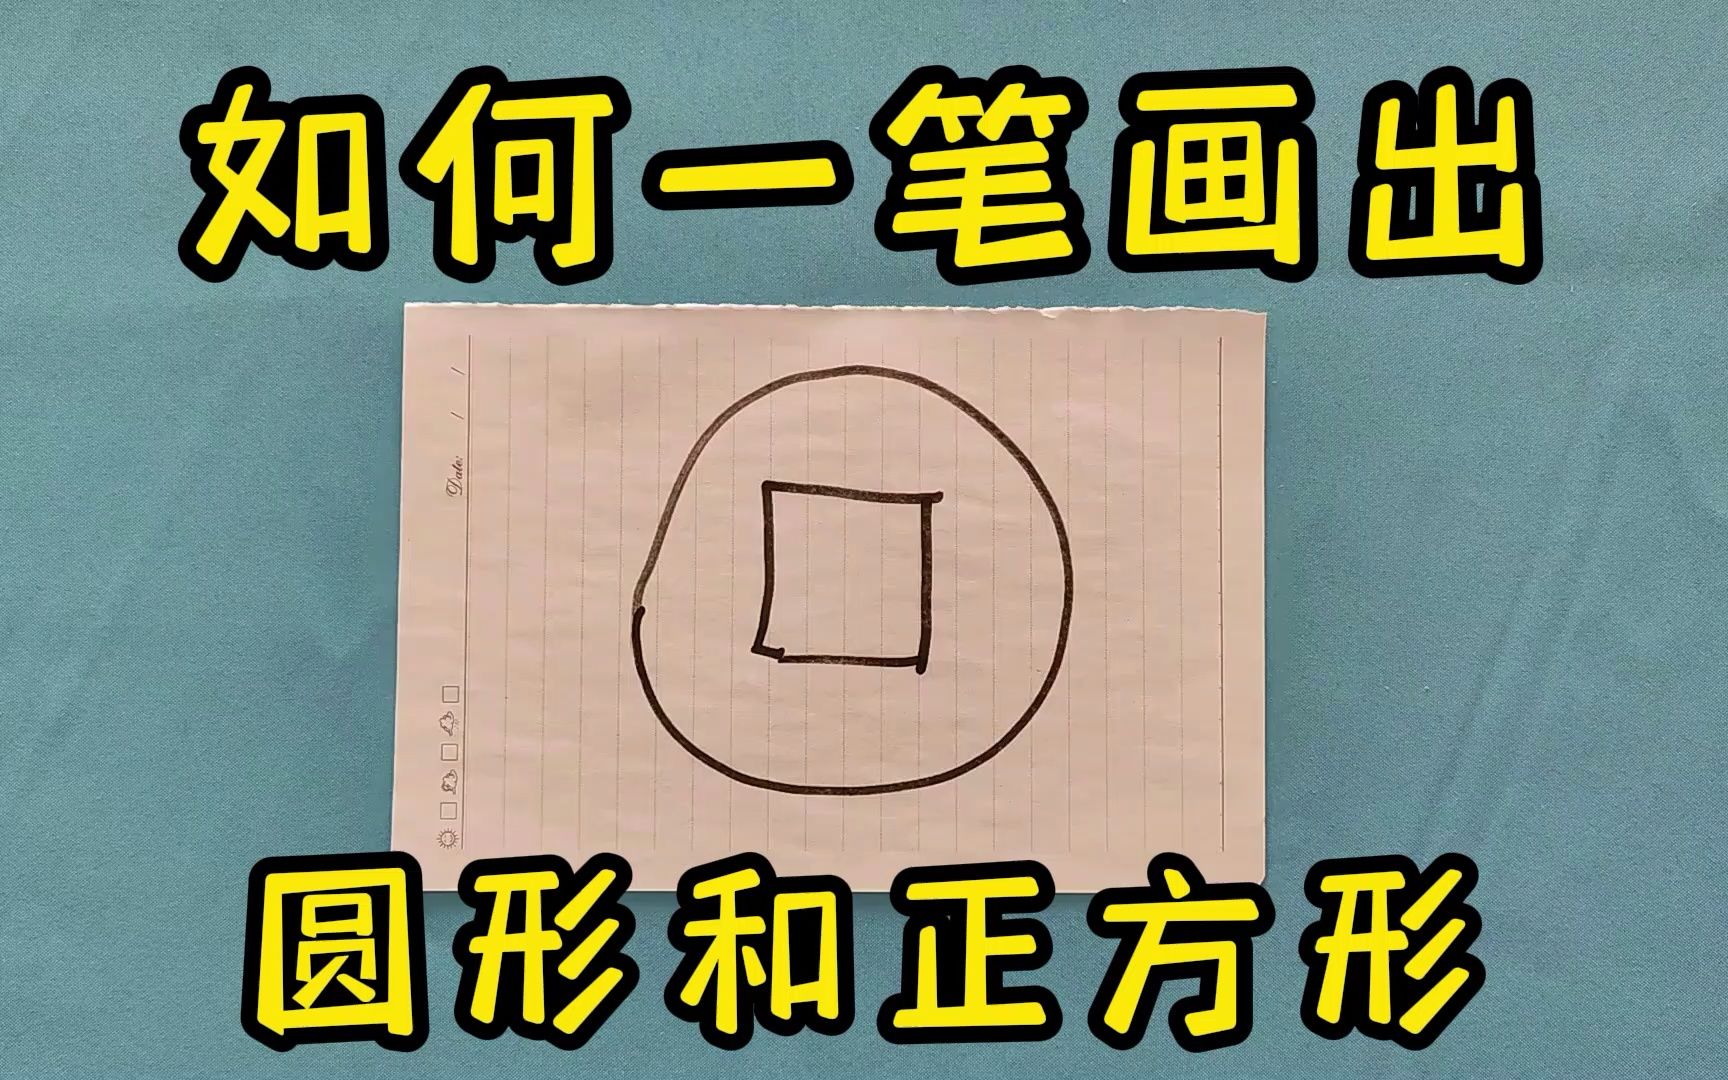 智力题挑战，如何一笔画出圆形和方形？方法很巧妙